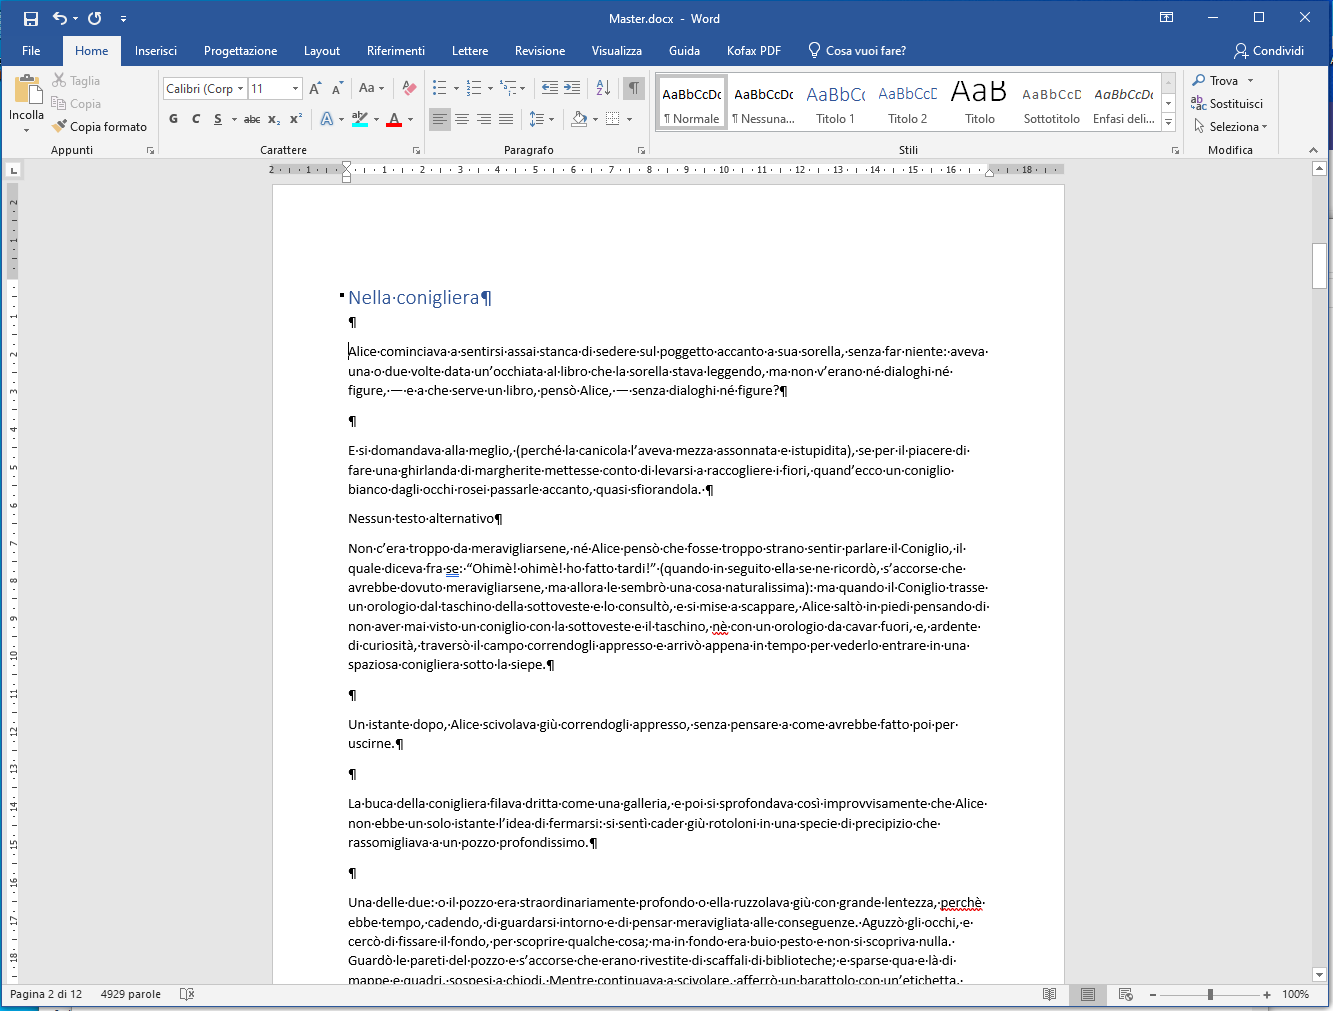 Documento Master in Microsoft Word - Testo incluso